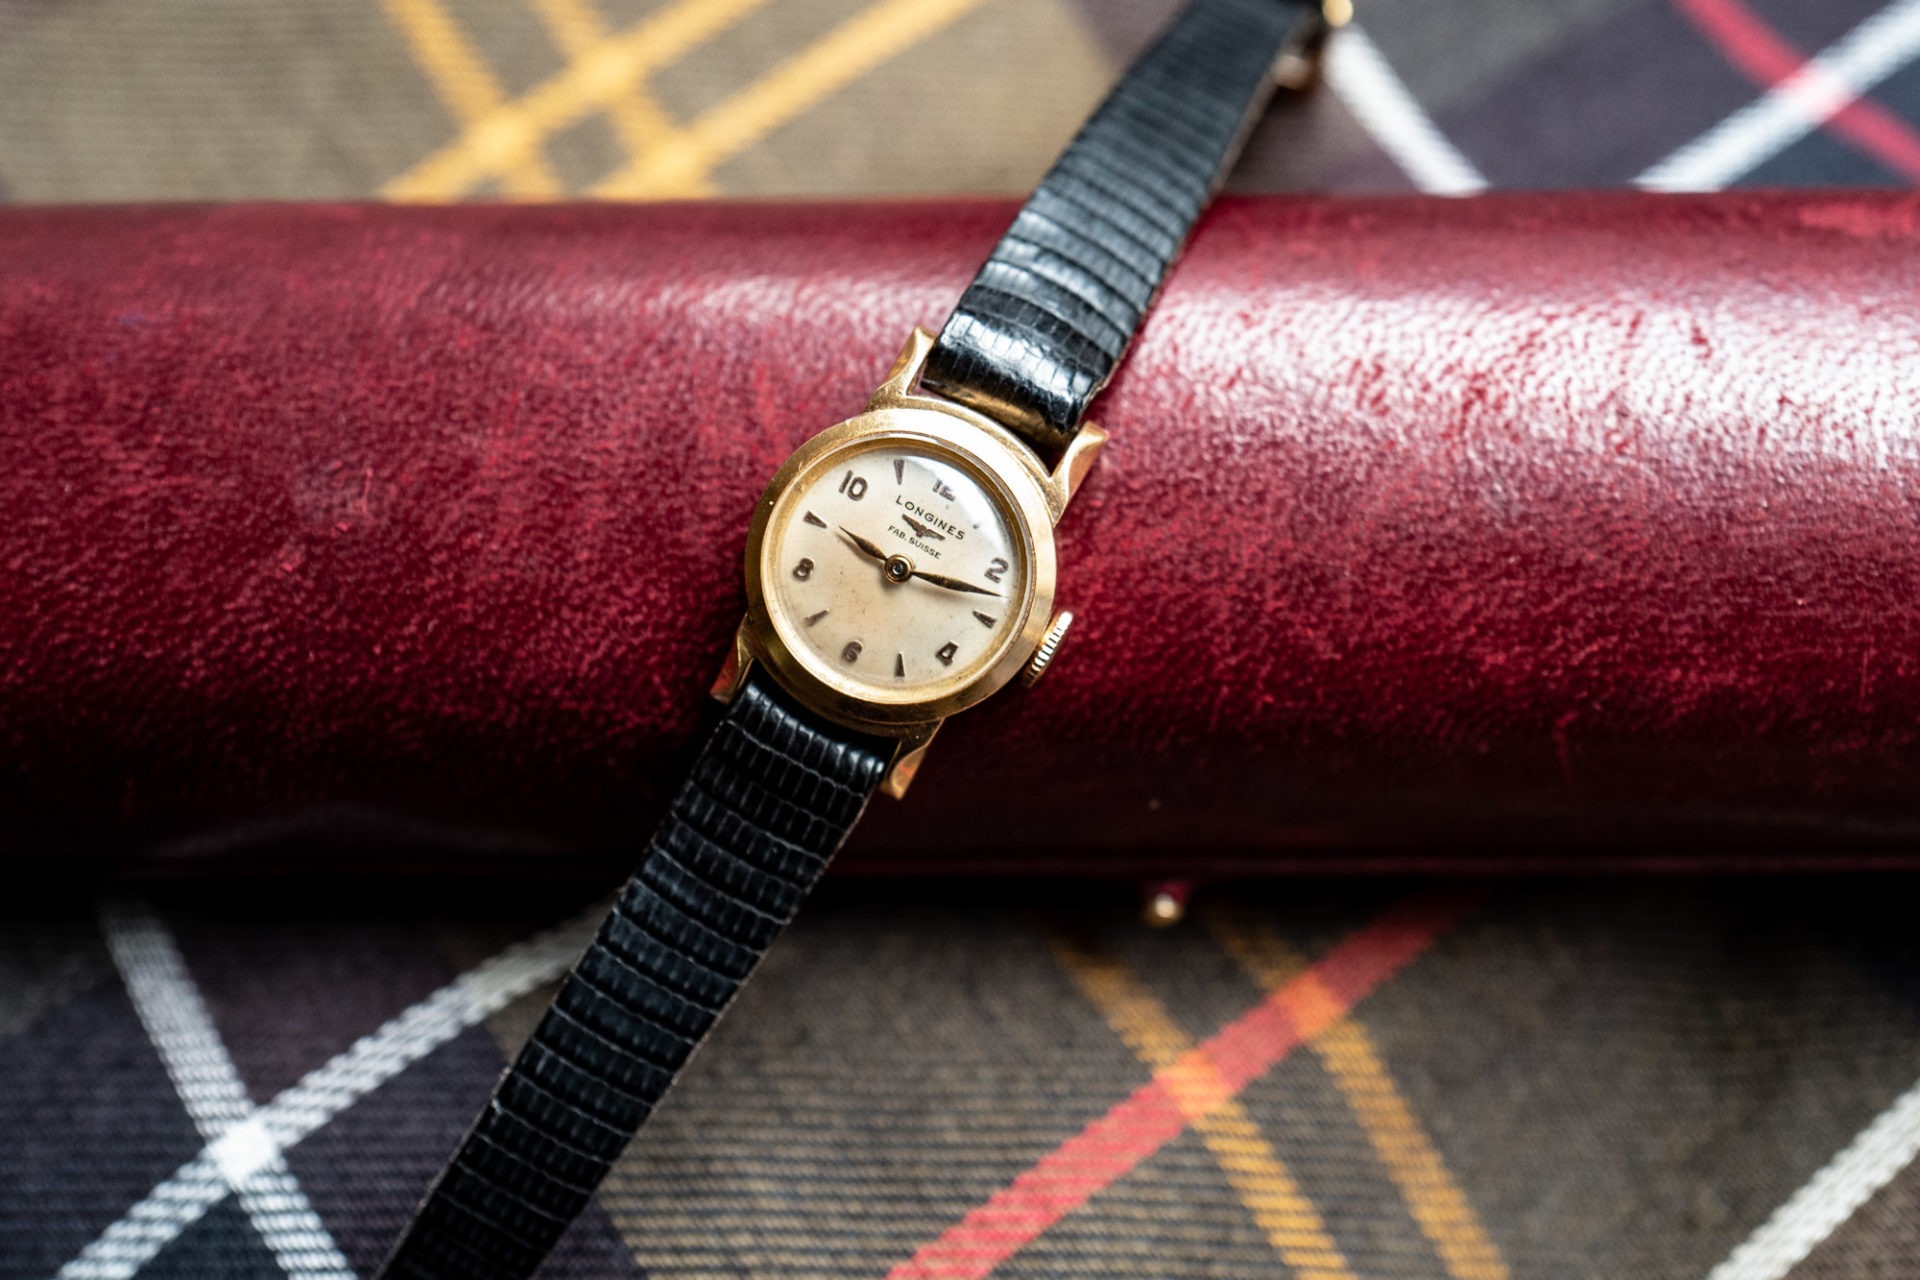 Longines dame en or - Sélection de montres vintage Joseph Bonnie